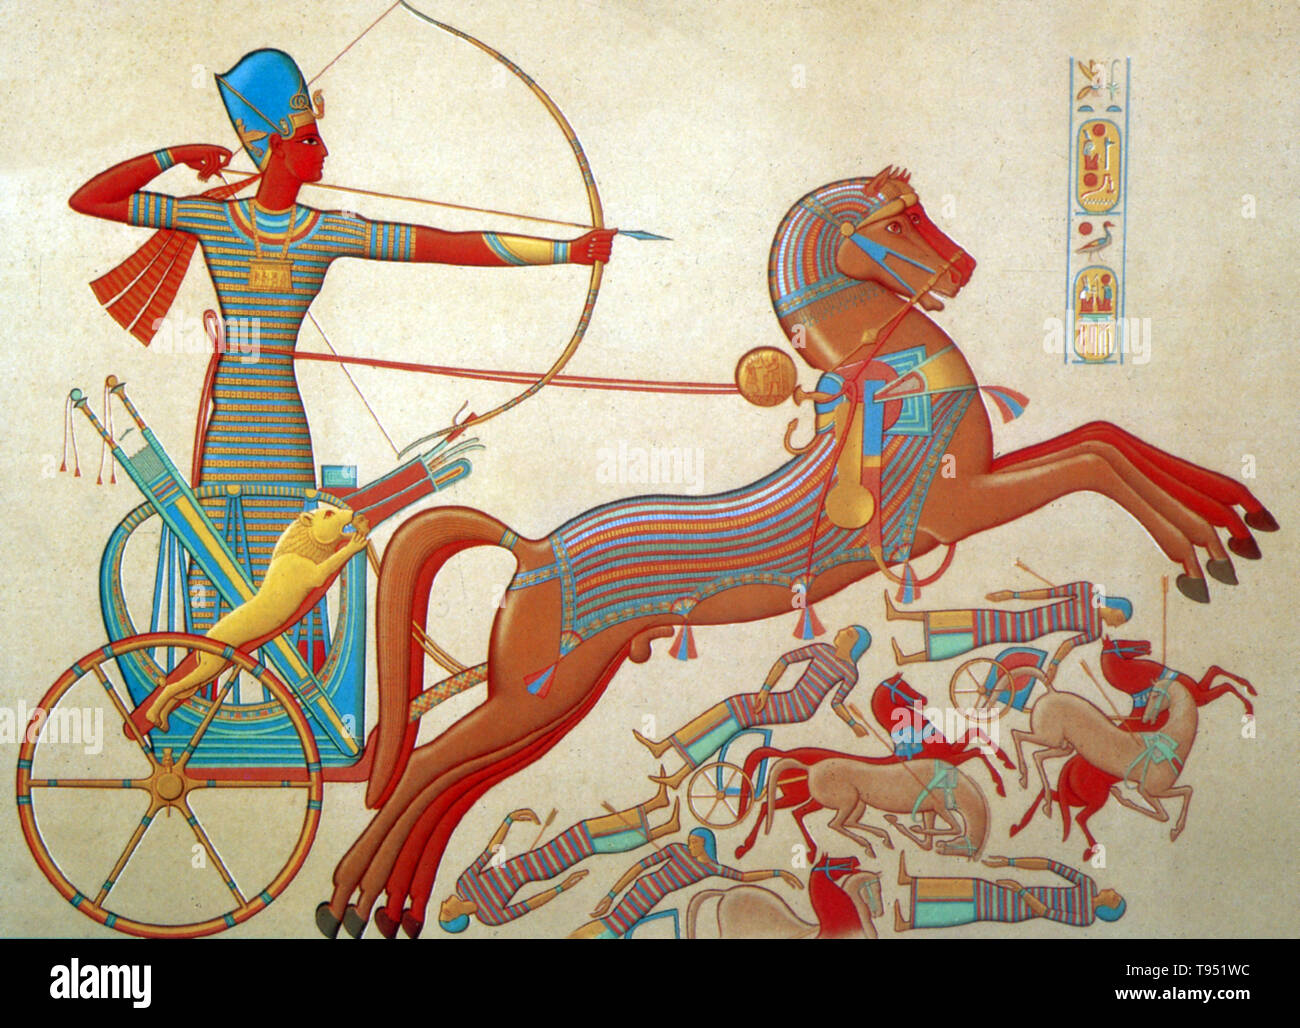 La bataille de Kadesh, a eu lieu entre les forces de l'Empire égyptien sous Ramsès II et l'Empire hittite sous Muwatalli II à la ville de Kadès sur l'Oronte, juste en amont du lac de Homs près de la frontière syro-libanaise. La bataille est généralement daté de 1274 avant J.-C. dans la chronologie égyptienne classique, et est la première bataille de l'histoire enregistrée dont le détail de la tactique et de formations sont connus. Banque D'Images